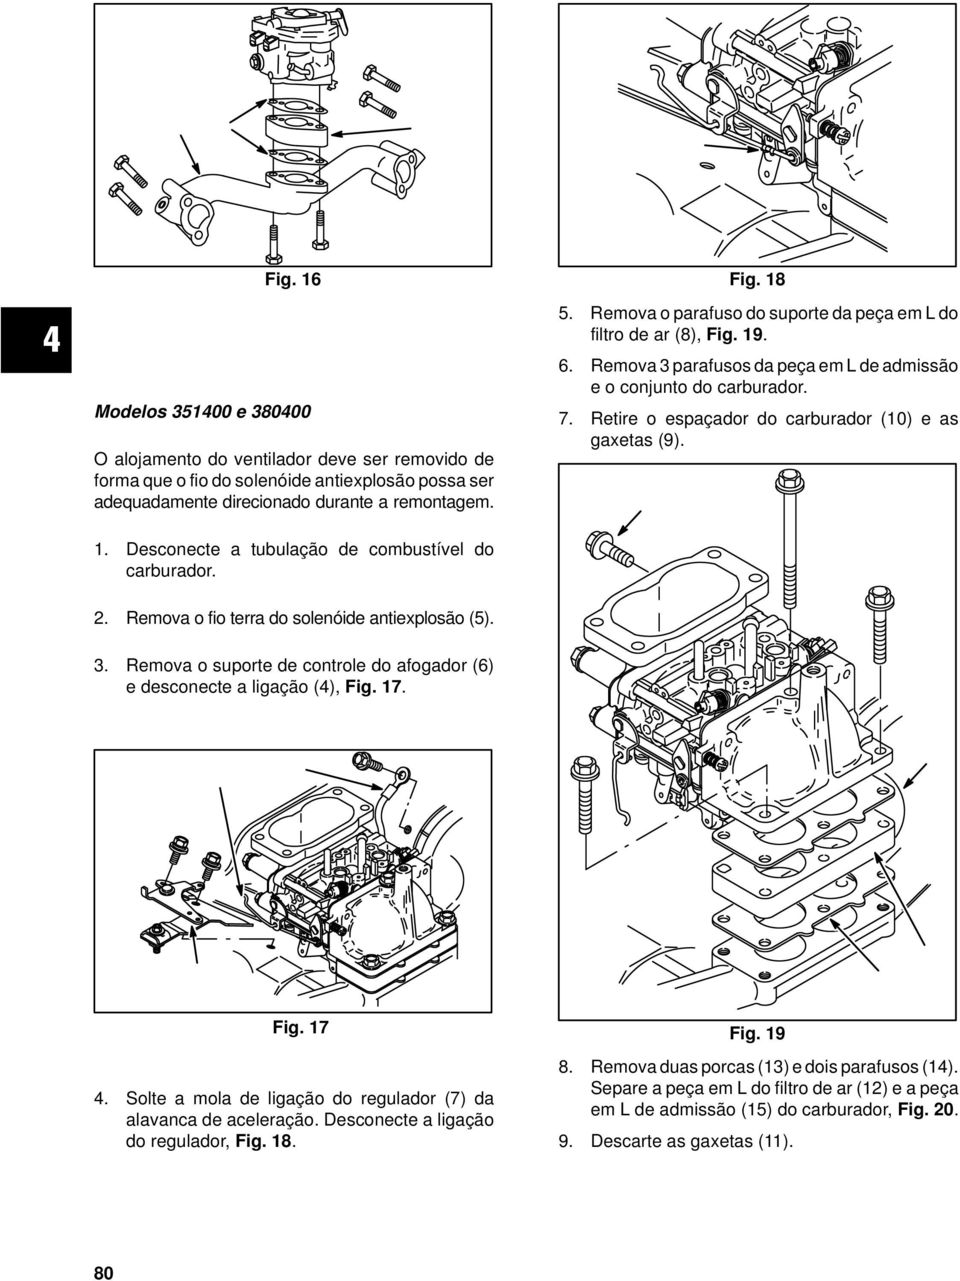 Retire o espaçador do carburador (10) e as gaxetas (9). 1. Desconecte a tubulação de combustível do carburador. 2. Remova o fio terra do solenóide antiexplosão (5). 3.